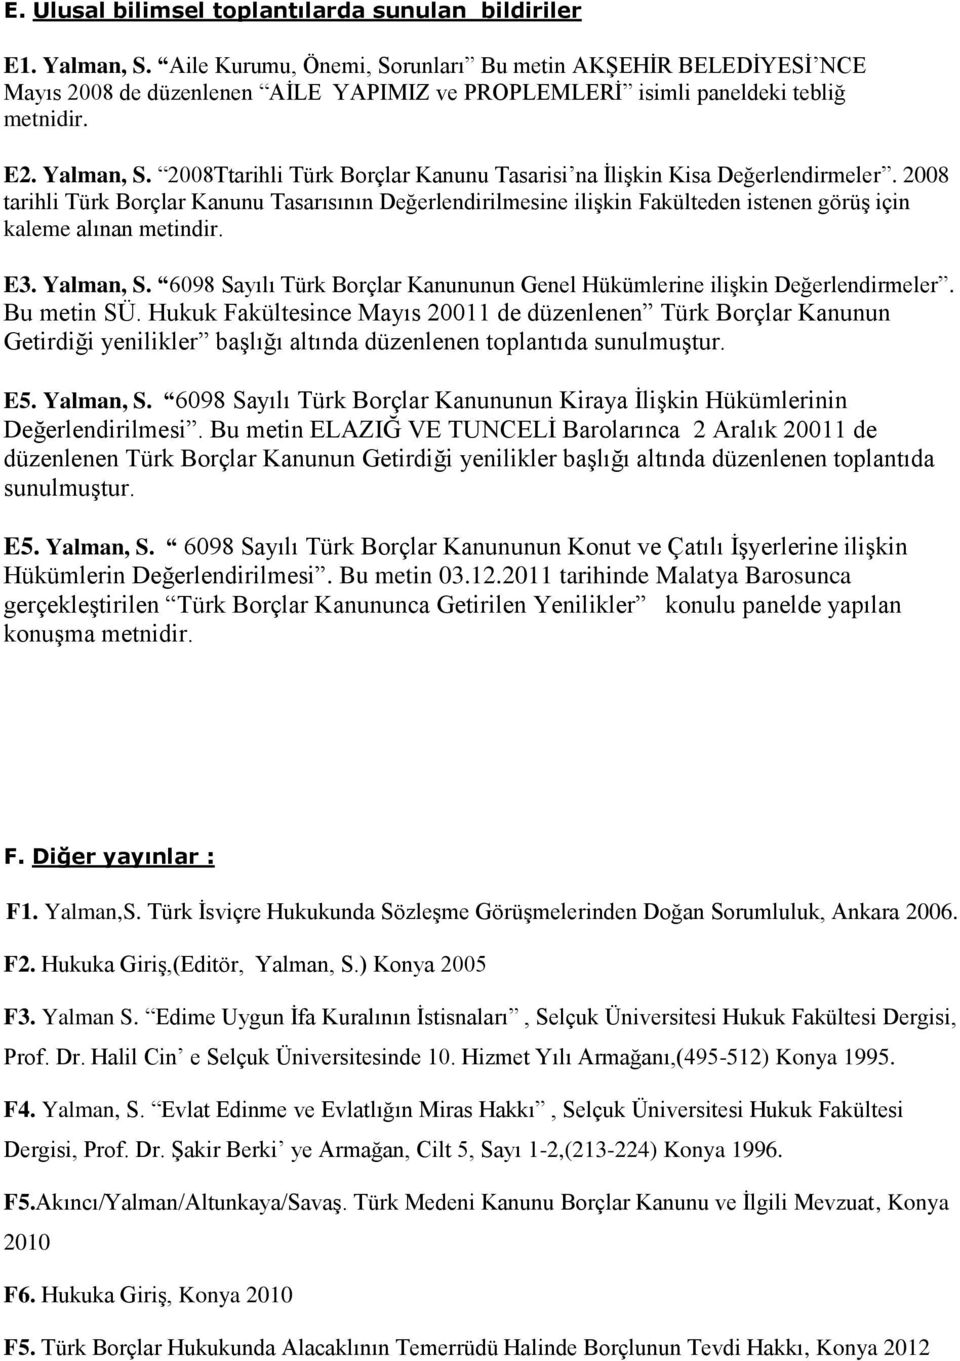 2008Ttarihli Türk Borçlar Kanunu Tasarisi na ĠliĢkin Kisa Değerlendirmeler.